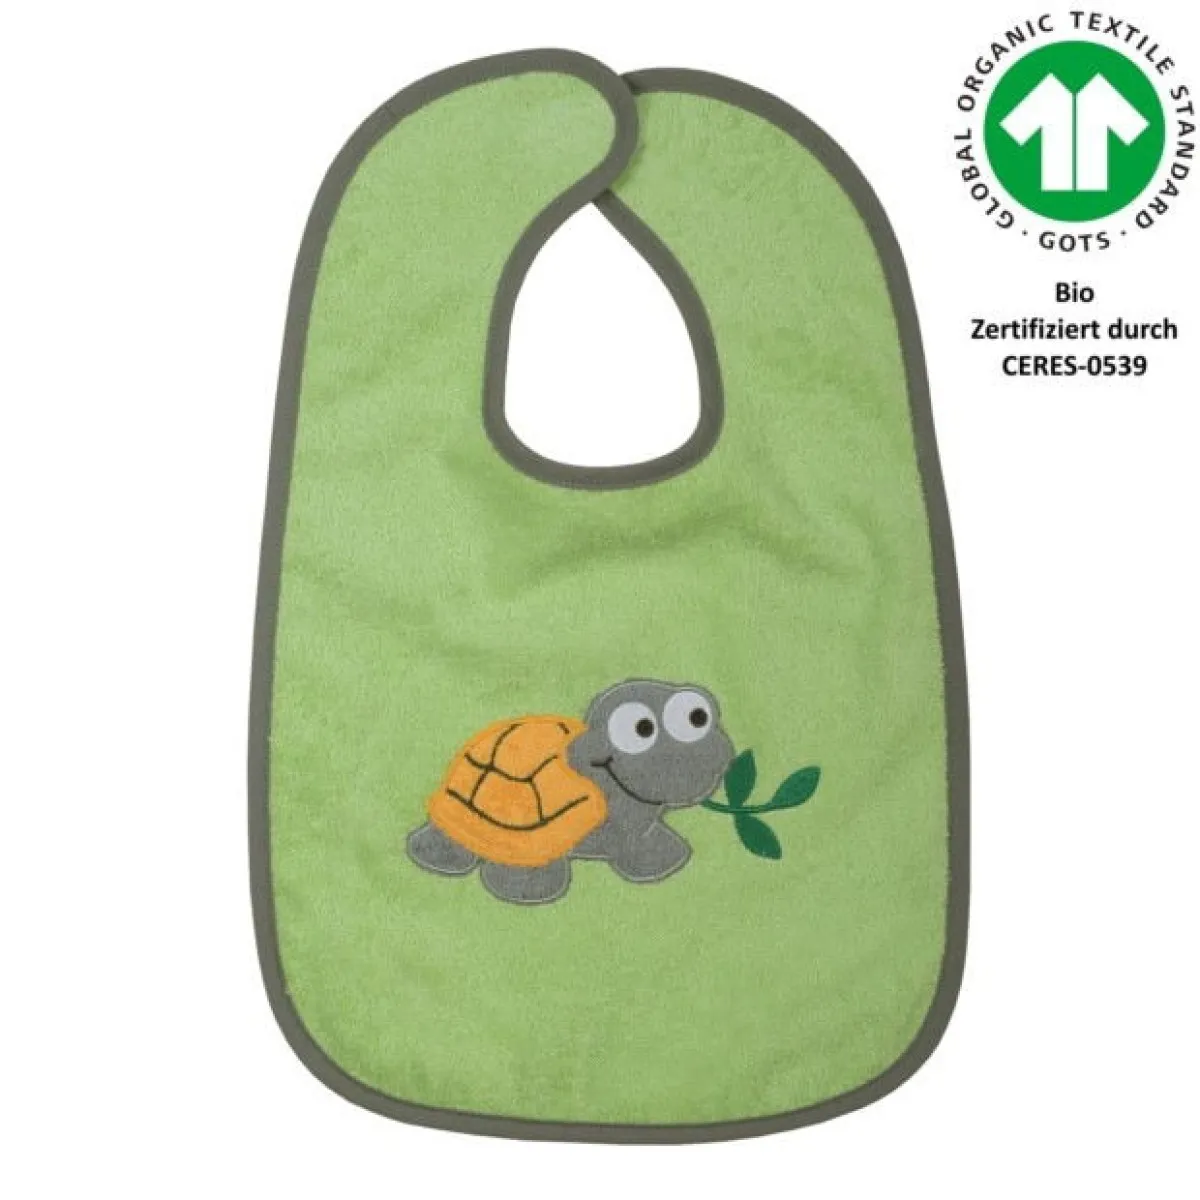 Slabbetje schildpad groen